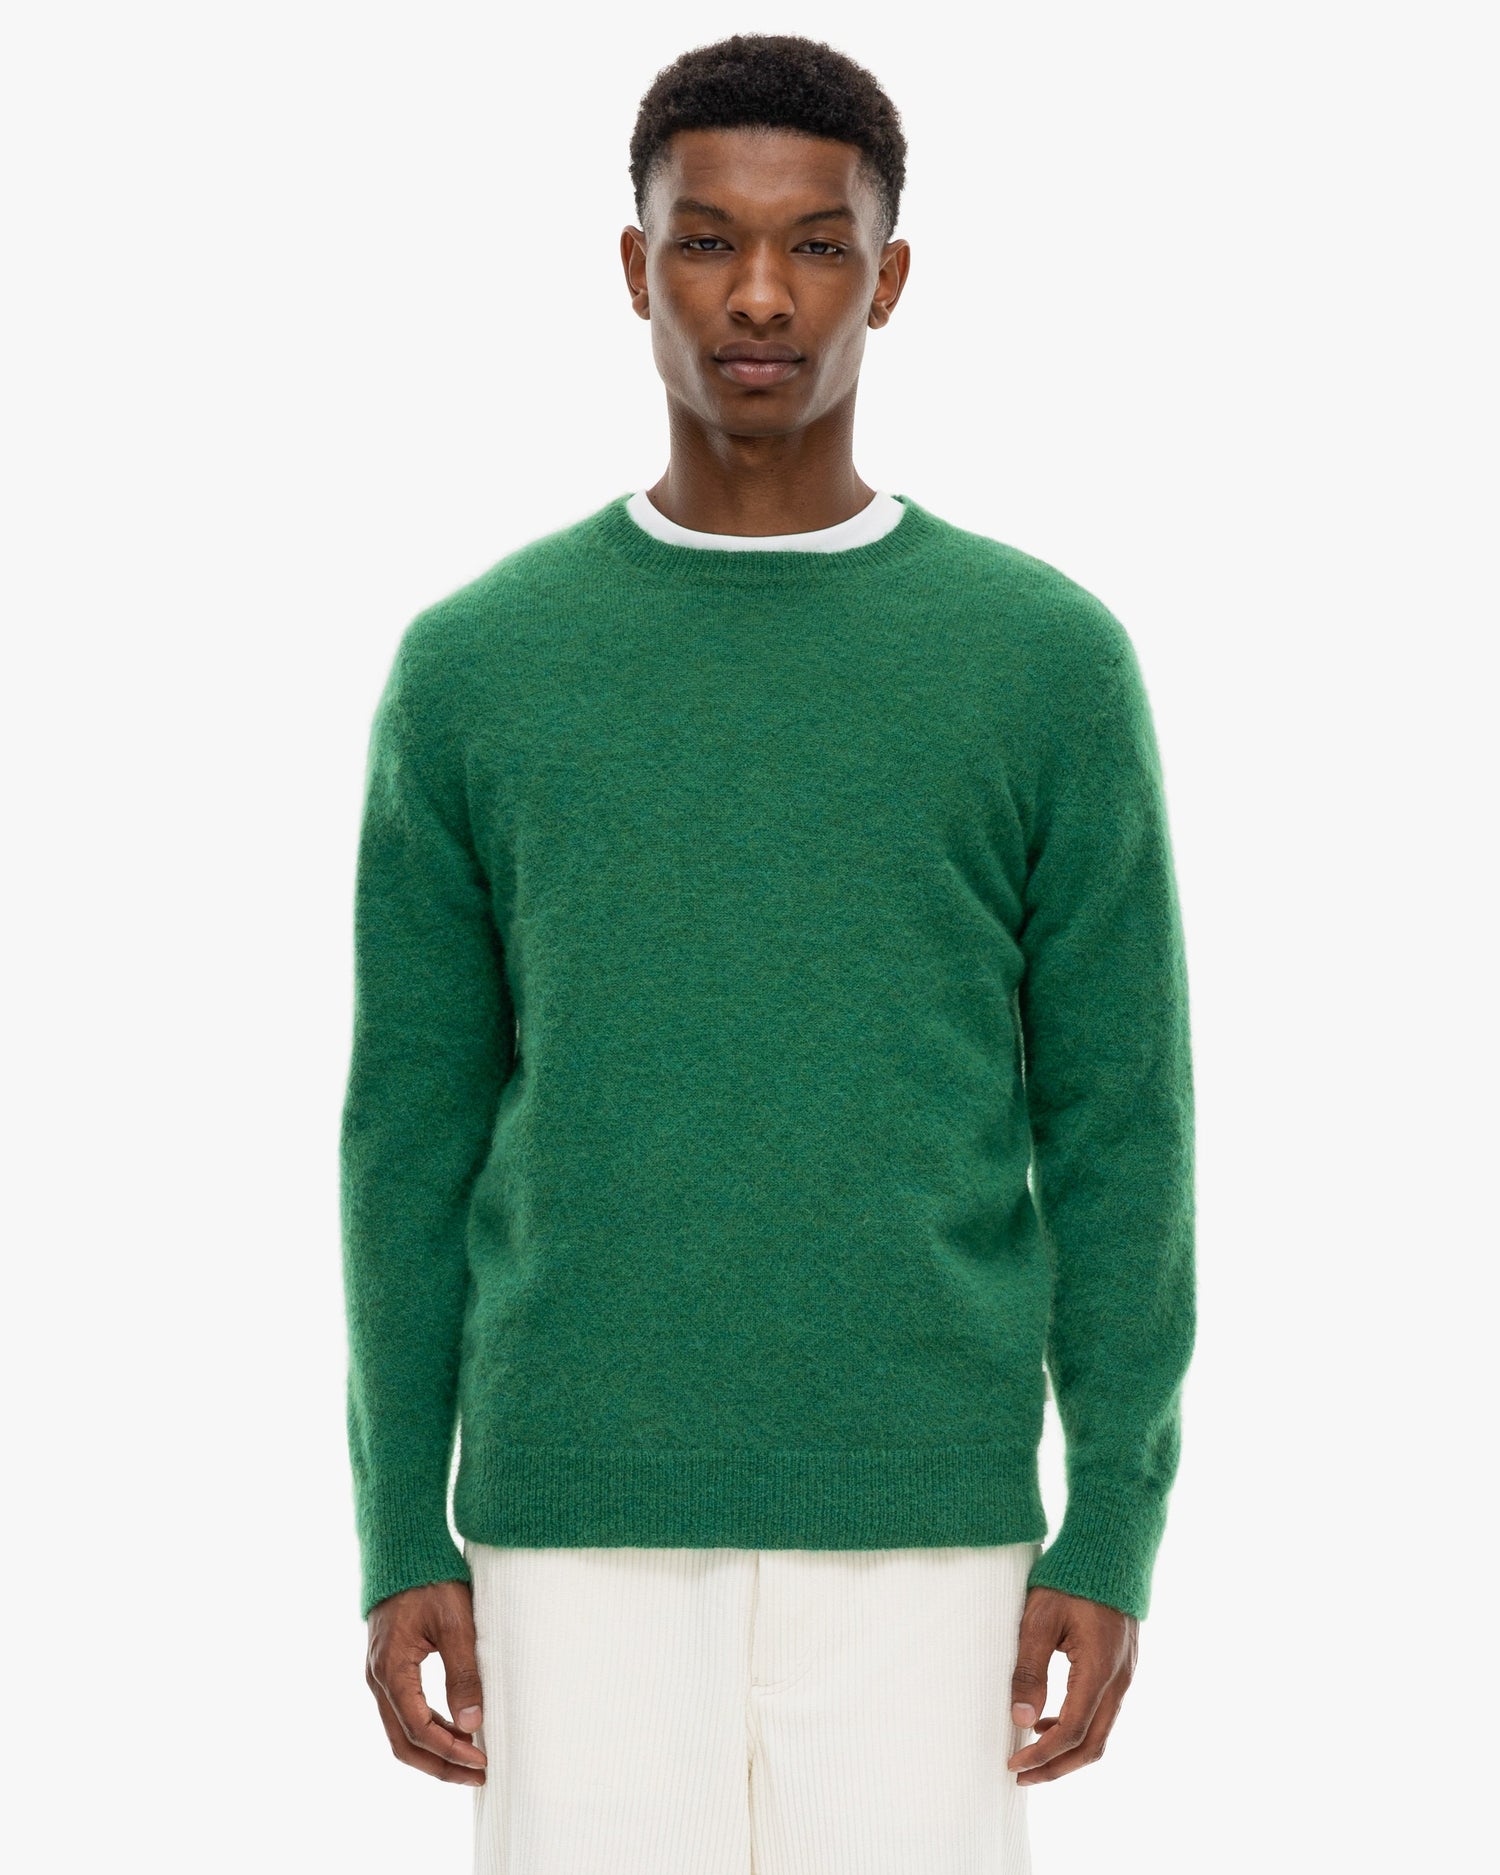 The Flirt Sweater Green